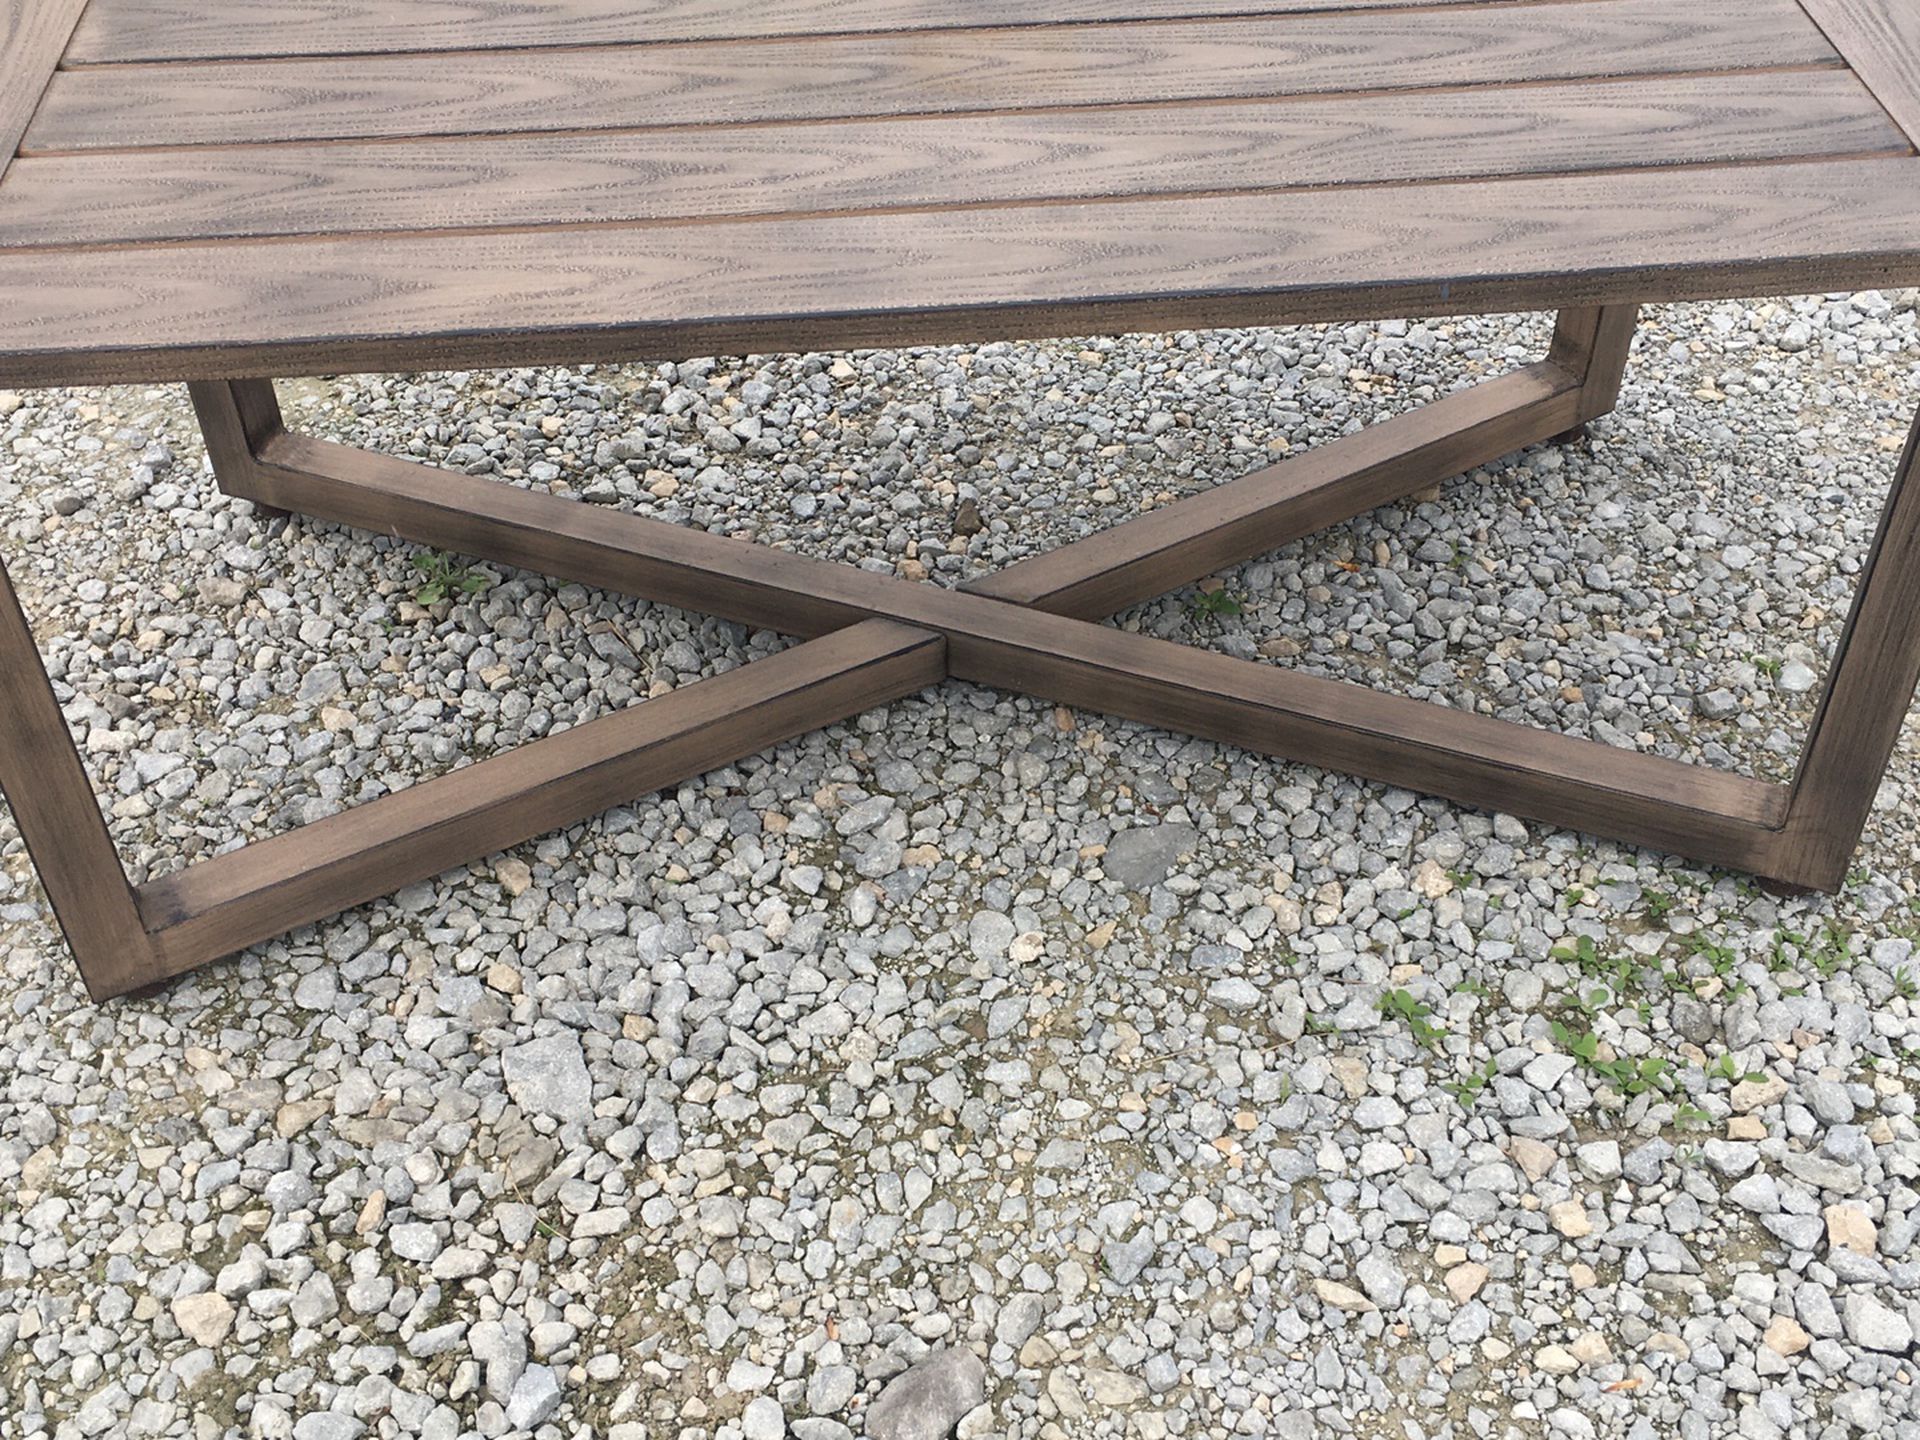 Metal coffee table - 41.75 x 21 x 18 tall